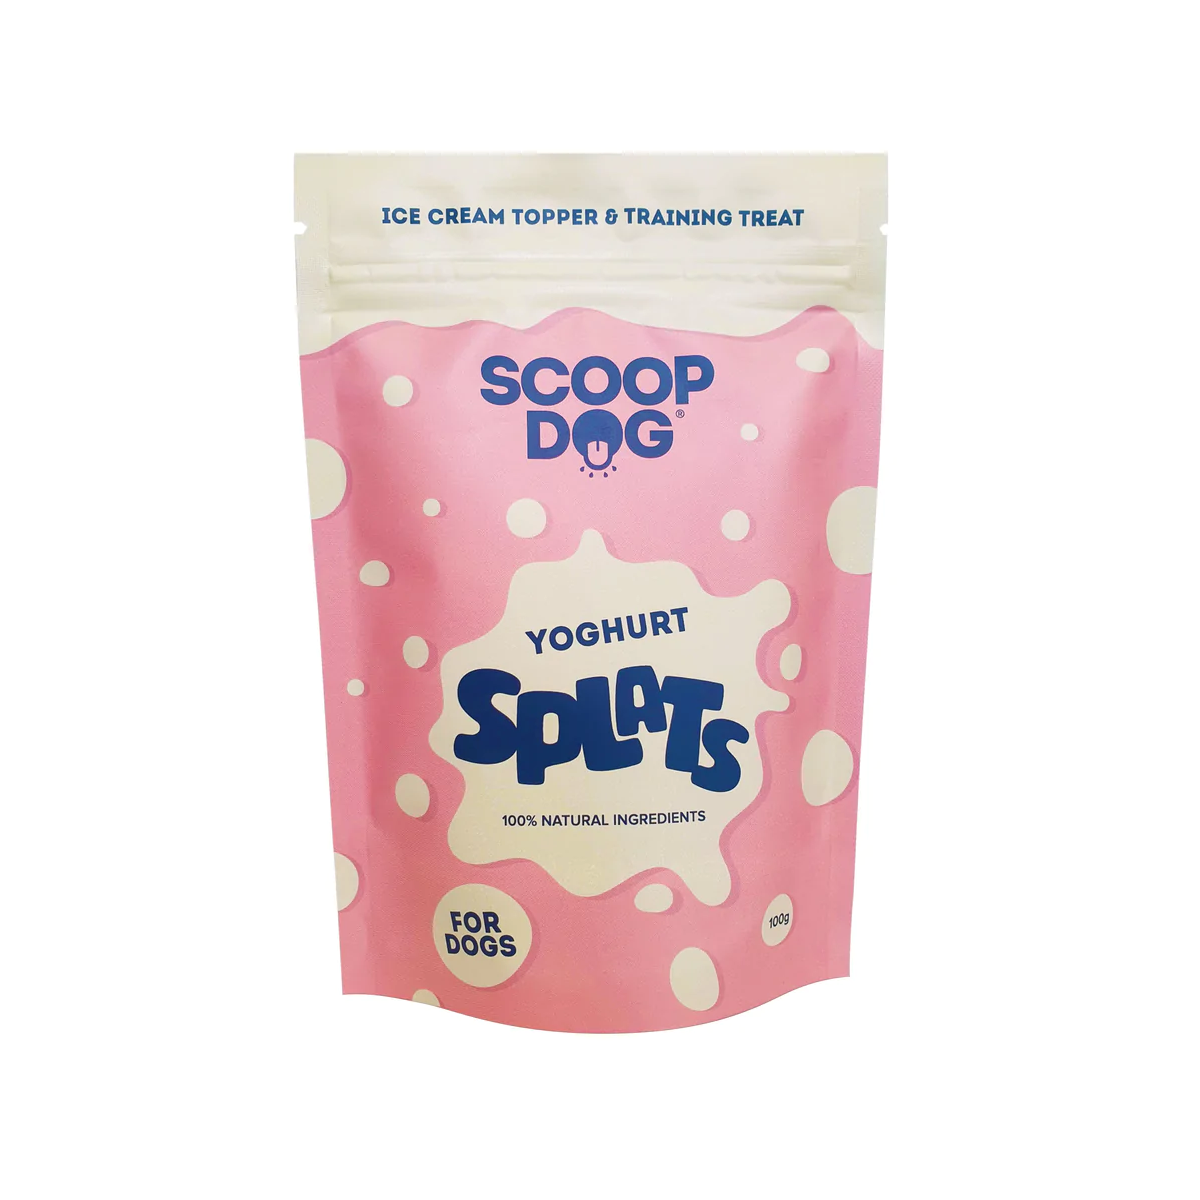 Scoop Dog Yoghurt Splats 100g